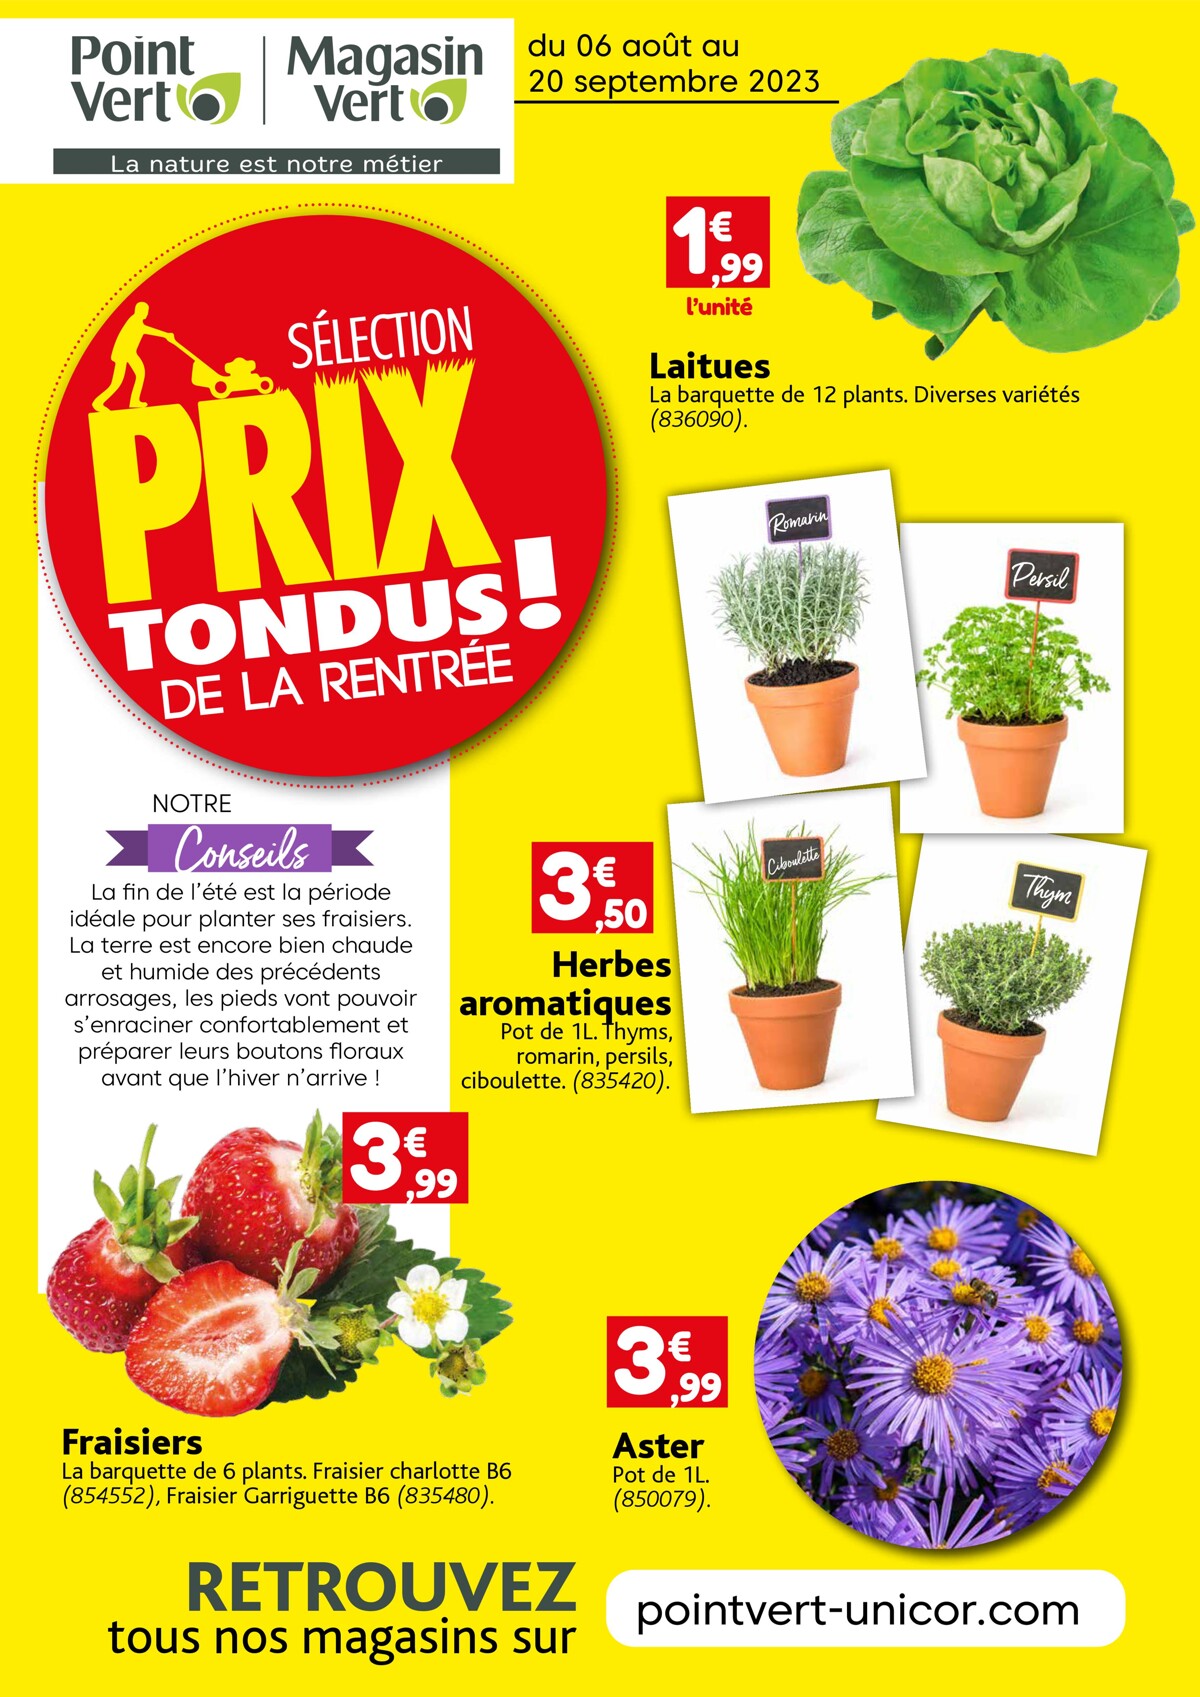 Catalogue Selection Prix Tondus de la Rentree! - Point Vert, page 00001